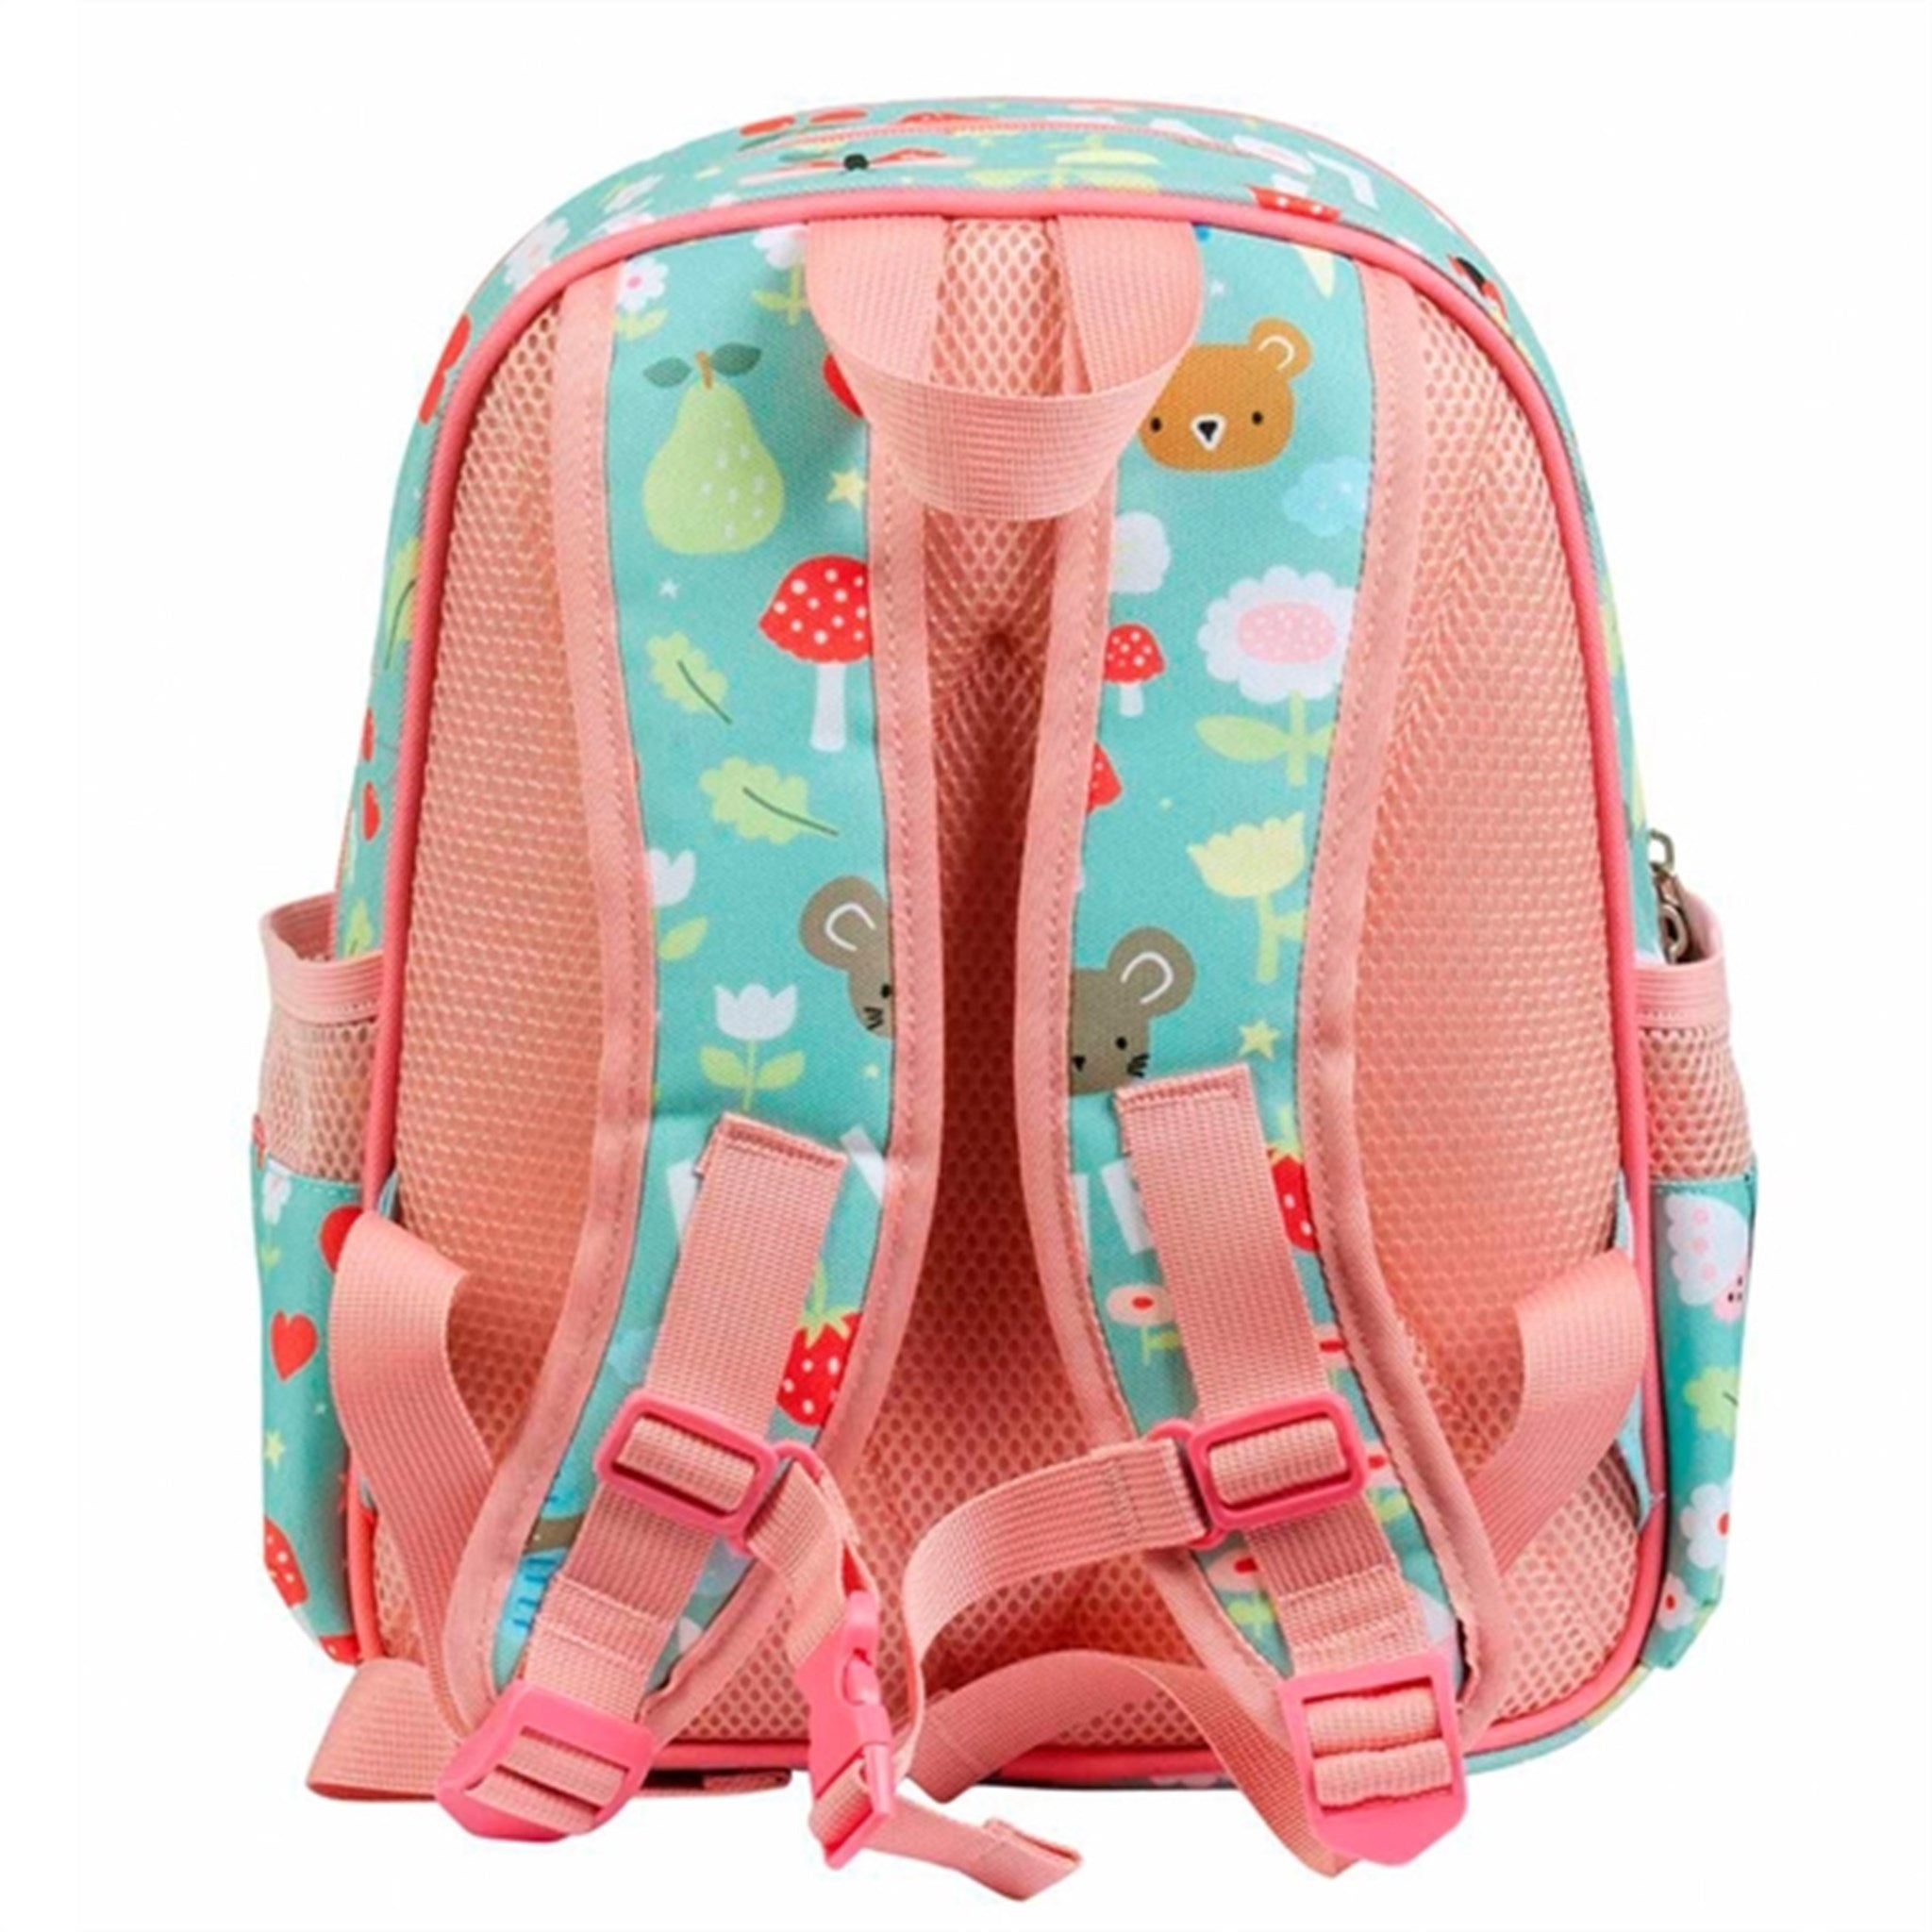 A Little Lovely Company Backpack Joy 2